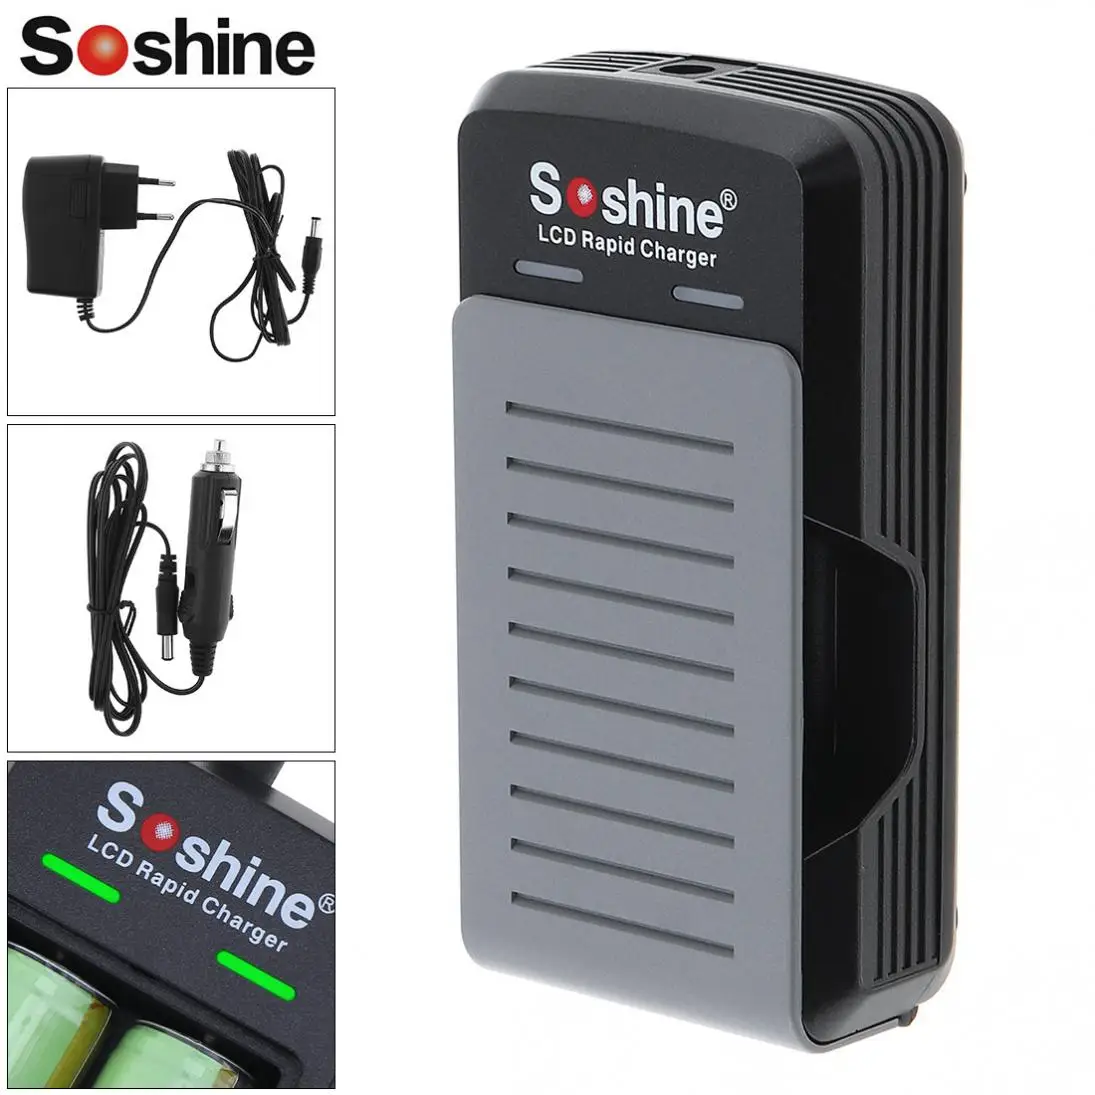 Soshine 100-240 V S2 2 слота Быстрый универсальное Батарея Зарядное устройство с Светодиодный индикатор для 18650/17650 батареи